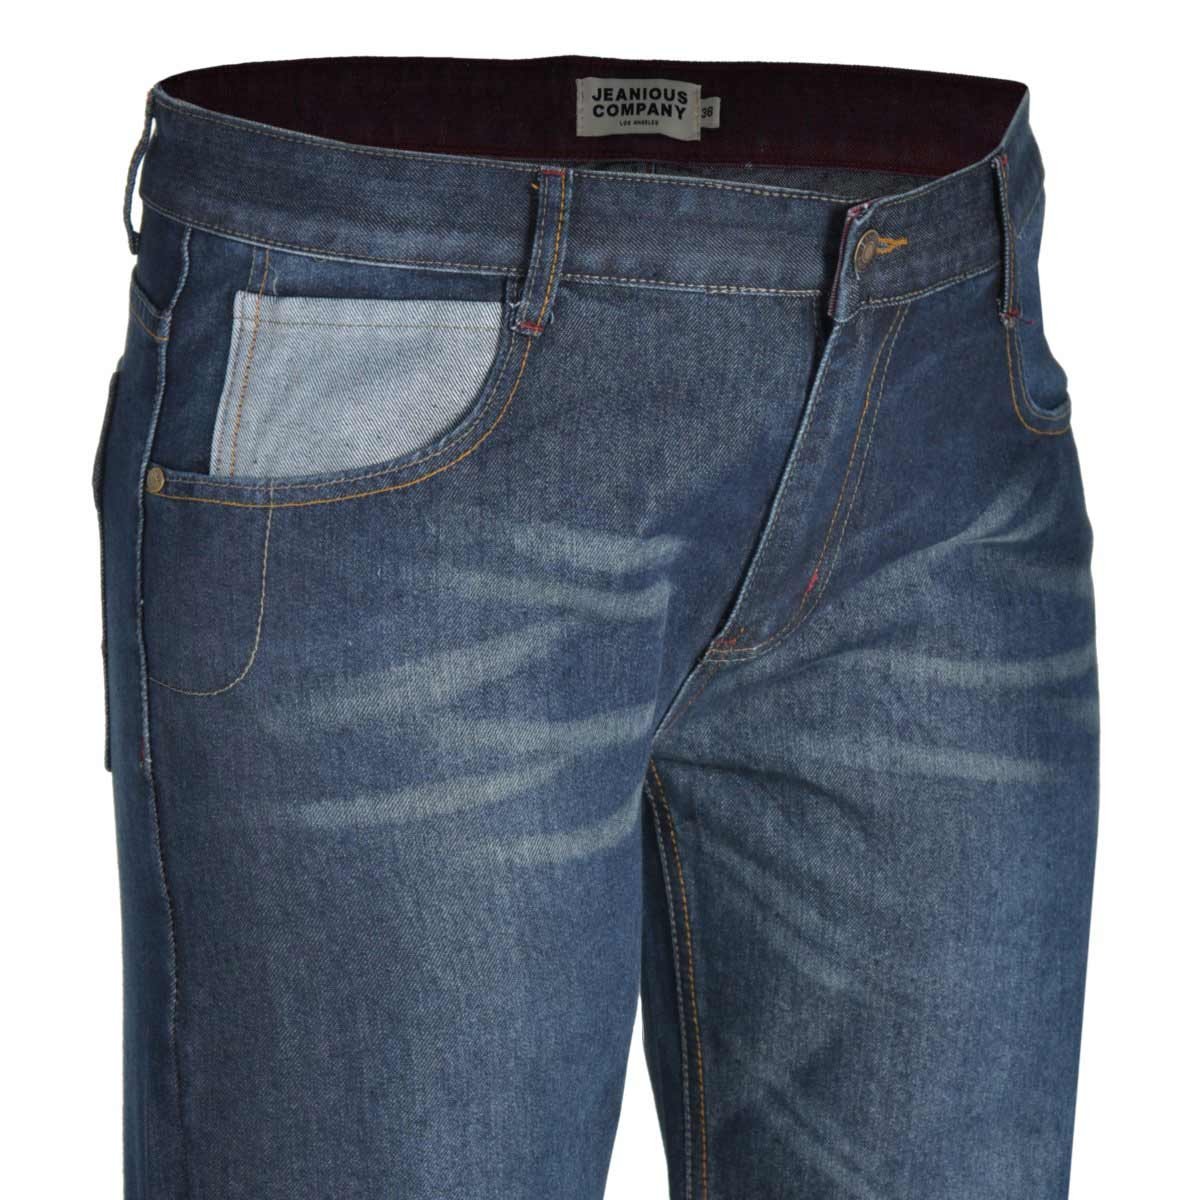 Jeans Deslavado Jeanious Plus